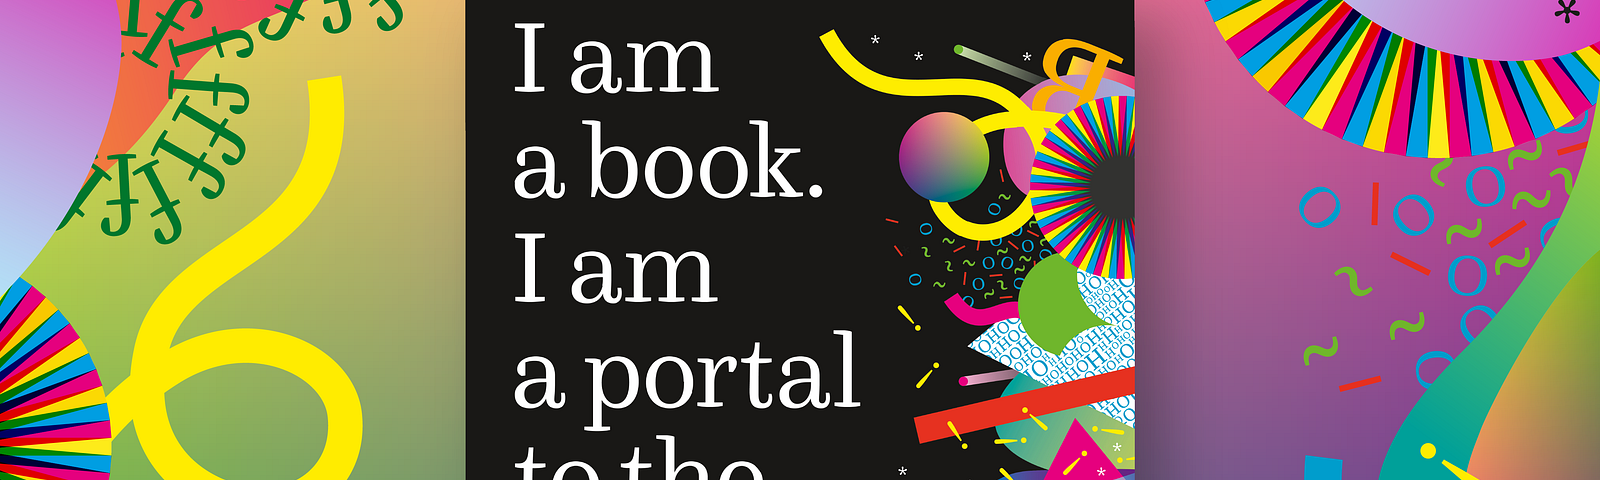 The cover of ‘I am a book. I am a portal to the universe.’